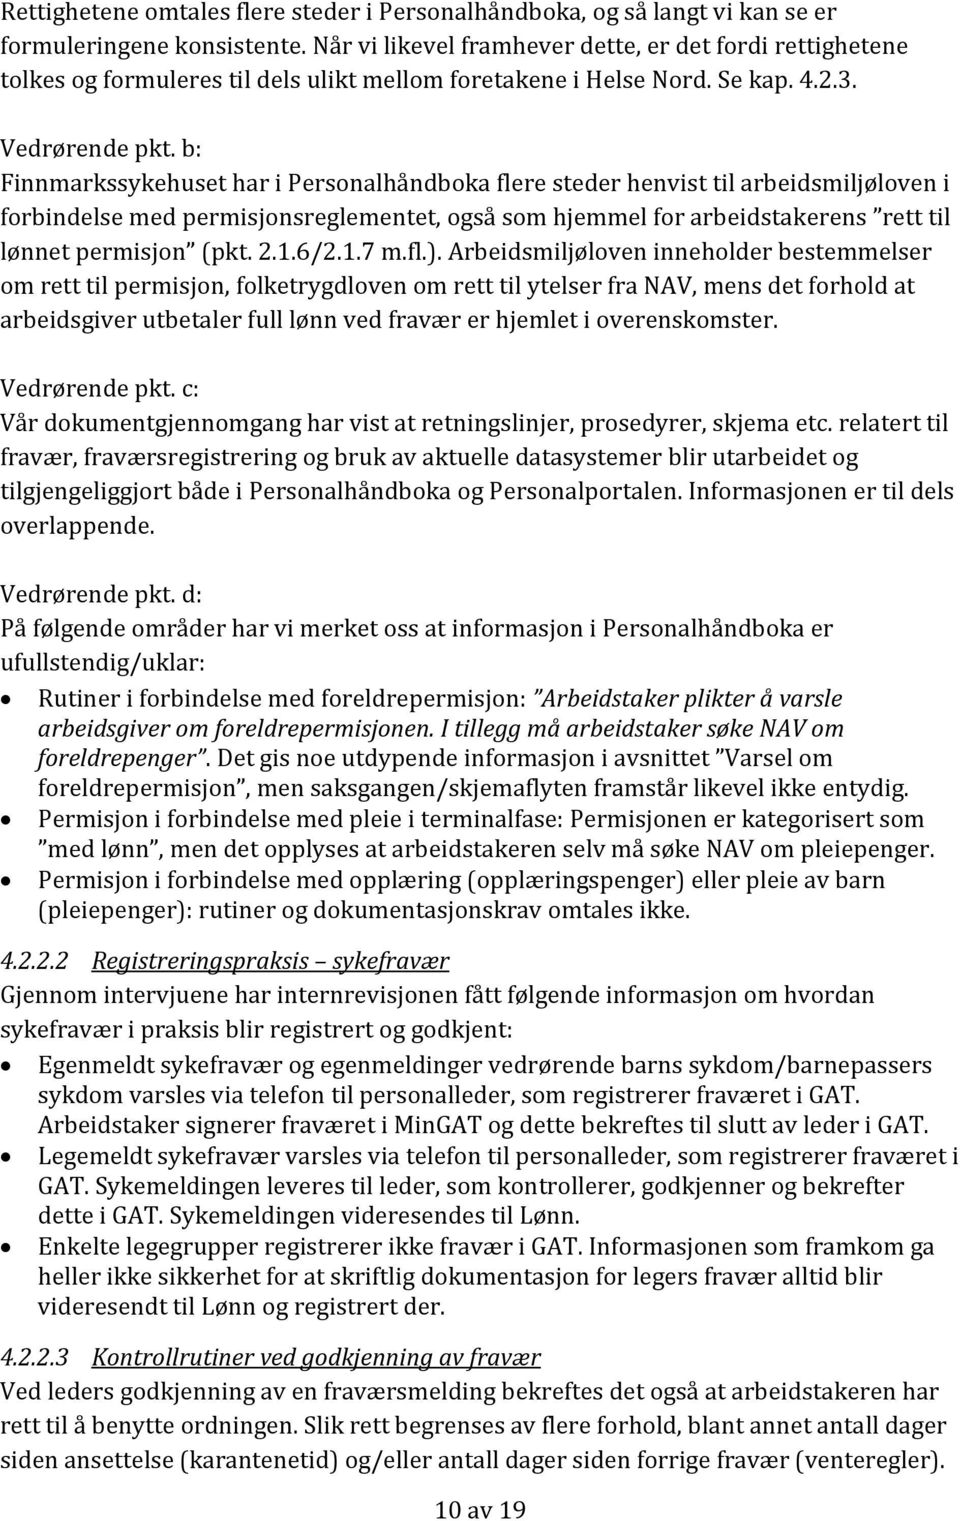 b: Finnmarkssykehuset har i Personalhåndboka flere steder henvist til arbeidsmiljøloven i forbindelse med permisjonsreglementet, også som hjemmel for arbeidstakerens rett til lønnet permisjon (pkt. 2.